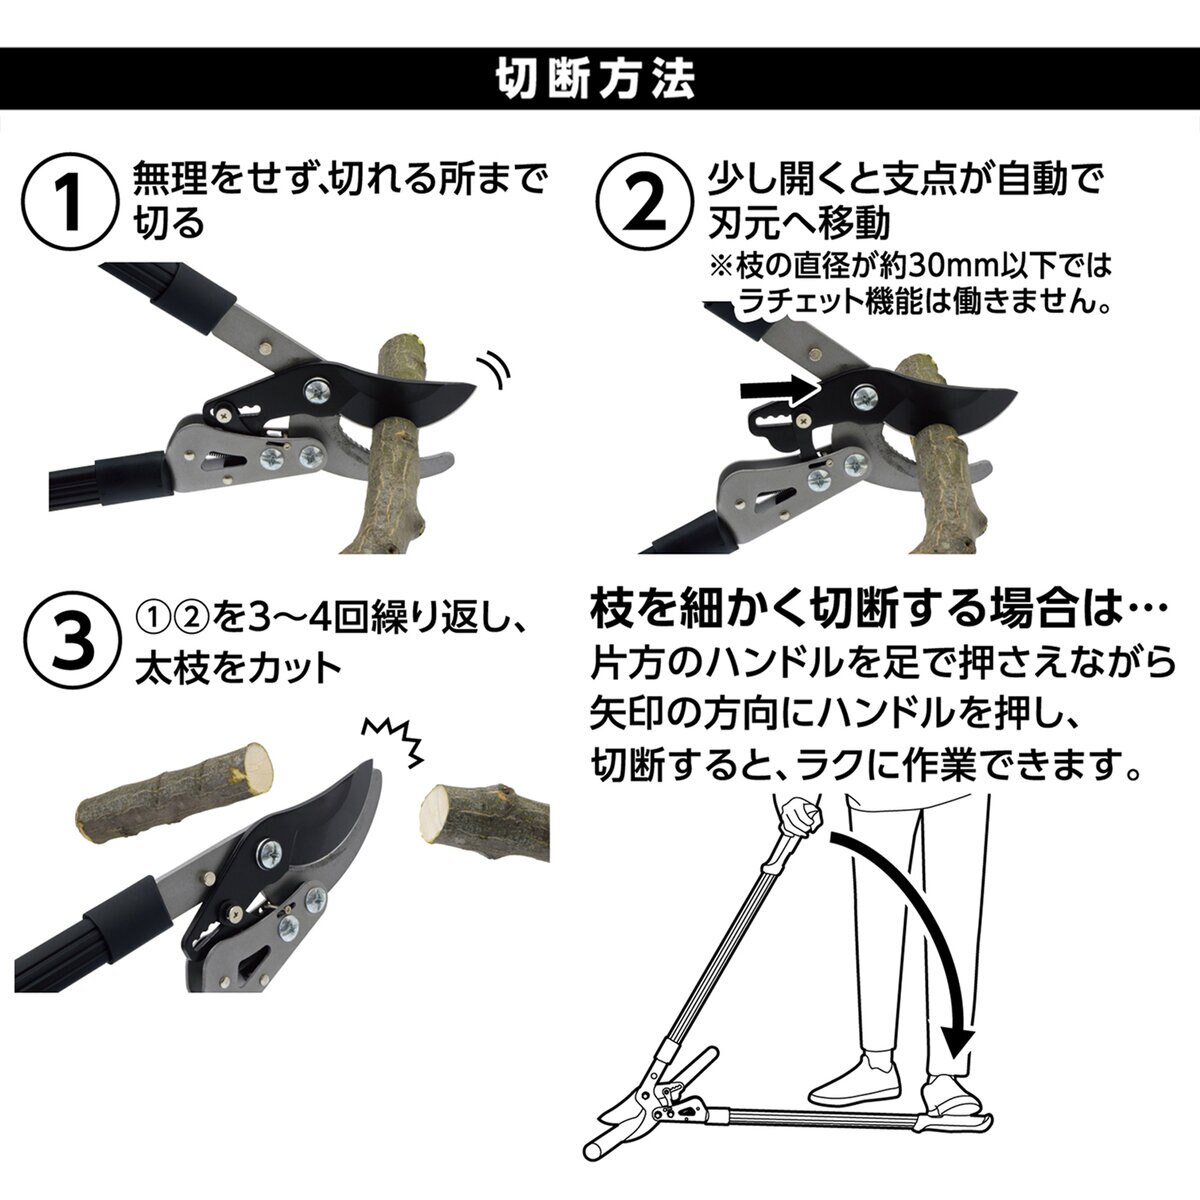 高儀 ラチェット式太枝切鋏 | Costco Japan